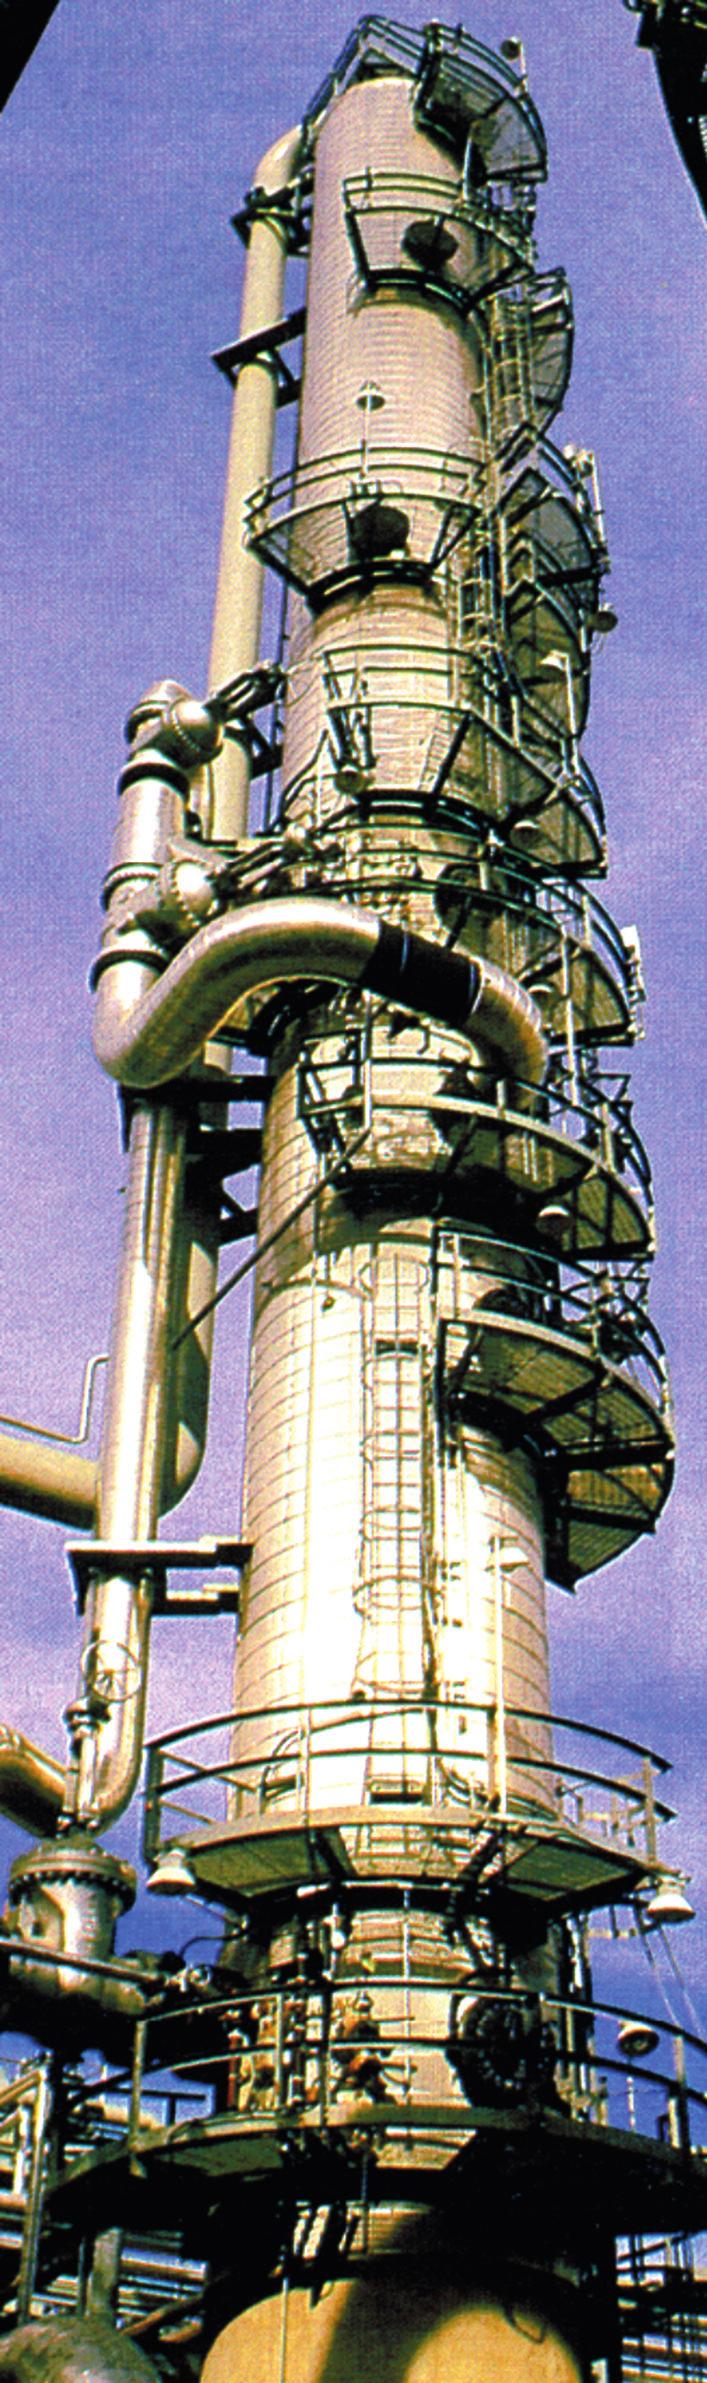 Μια αποστακτική στήλη ατμοσφαιρικής πίεσης με ύψος 50 m και διάμετρο 9 m έχει ικανότητα διύλισης 7 περίπου 10 τόνων πετρελαίου το χρόνο.